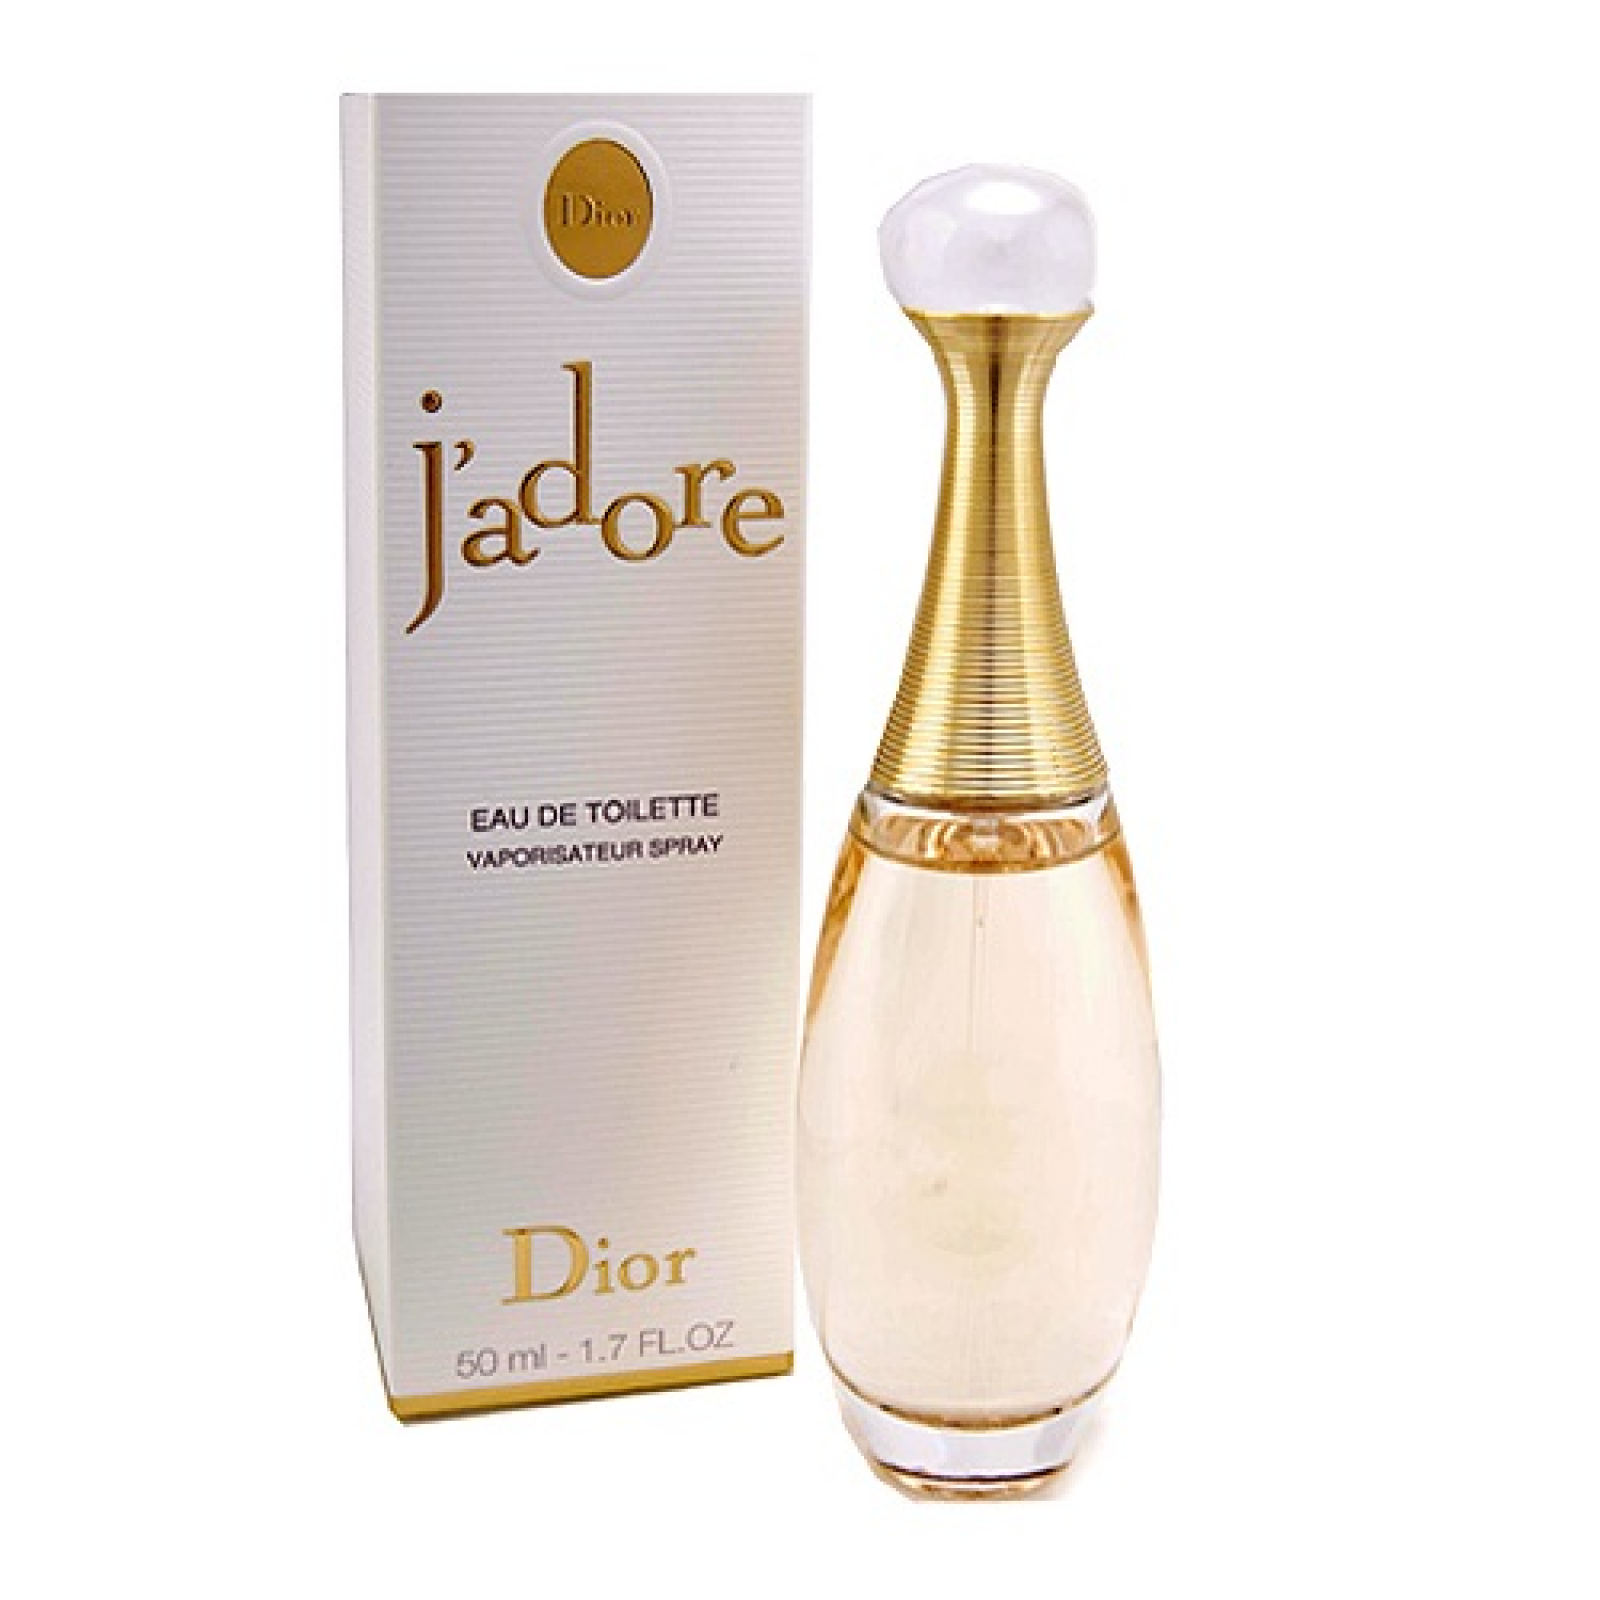 Nước hoa nữ Christian Dior Jadore EDP 5ml chính hãng pháp